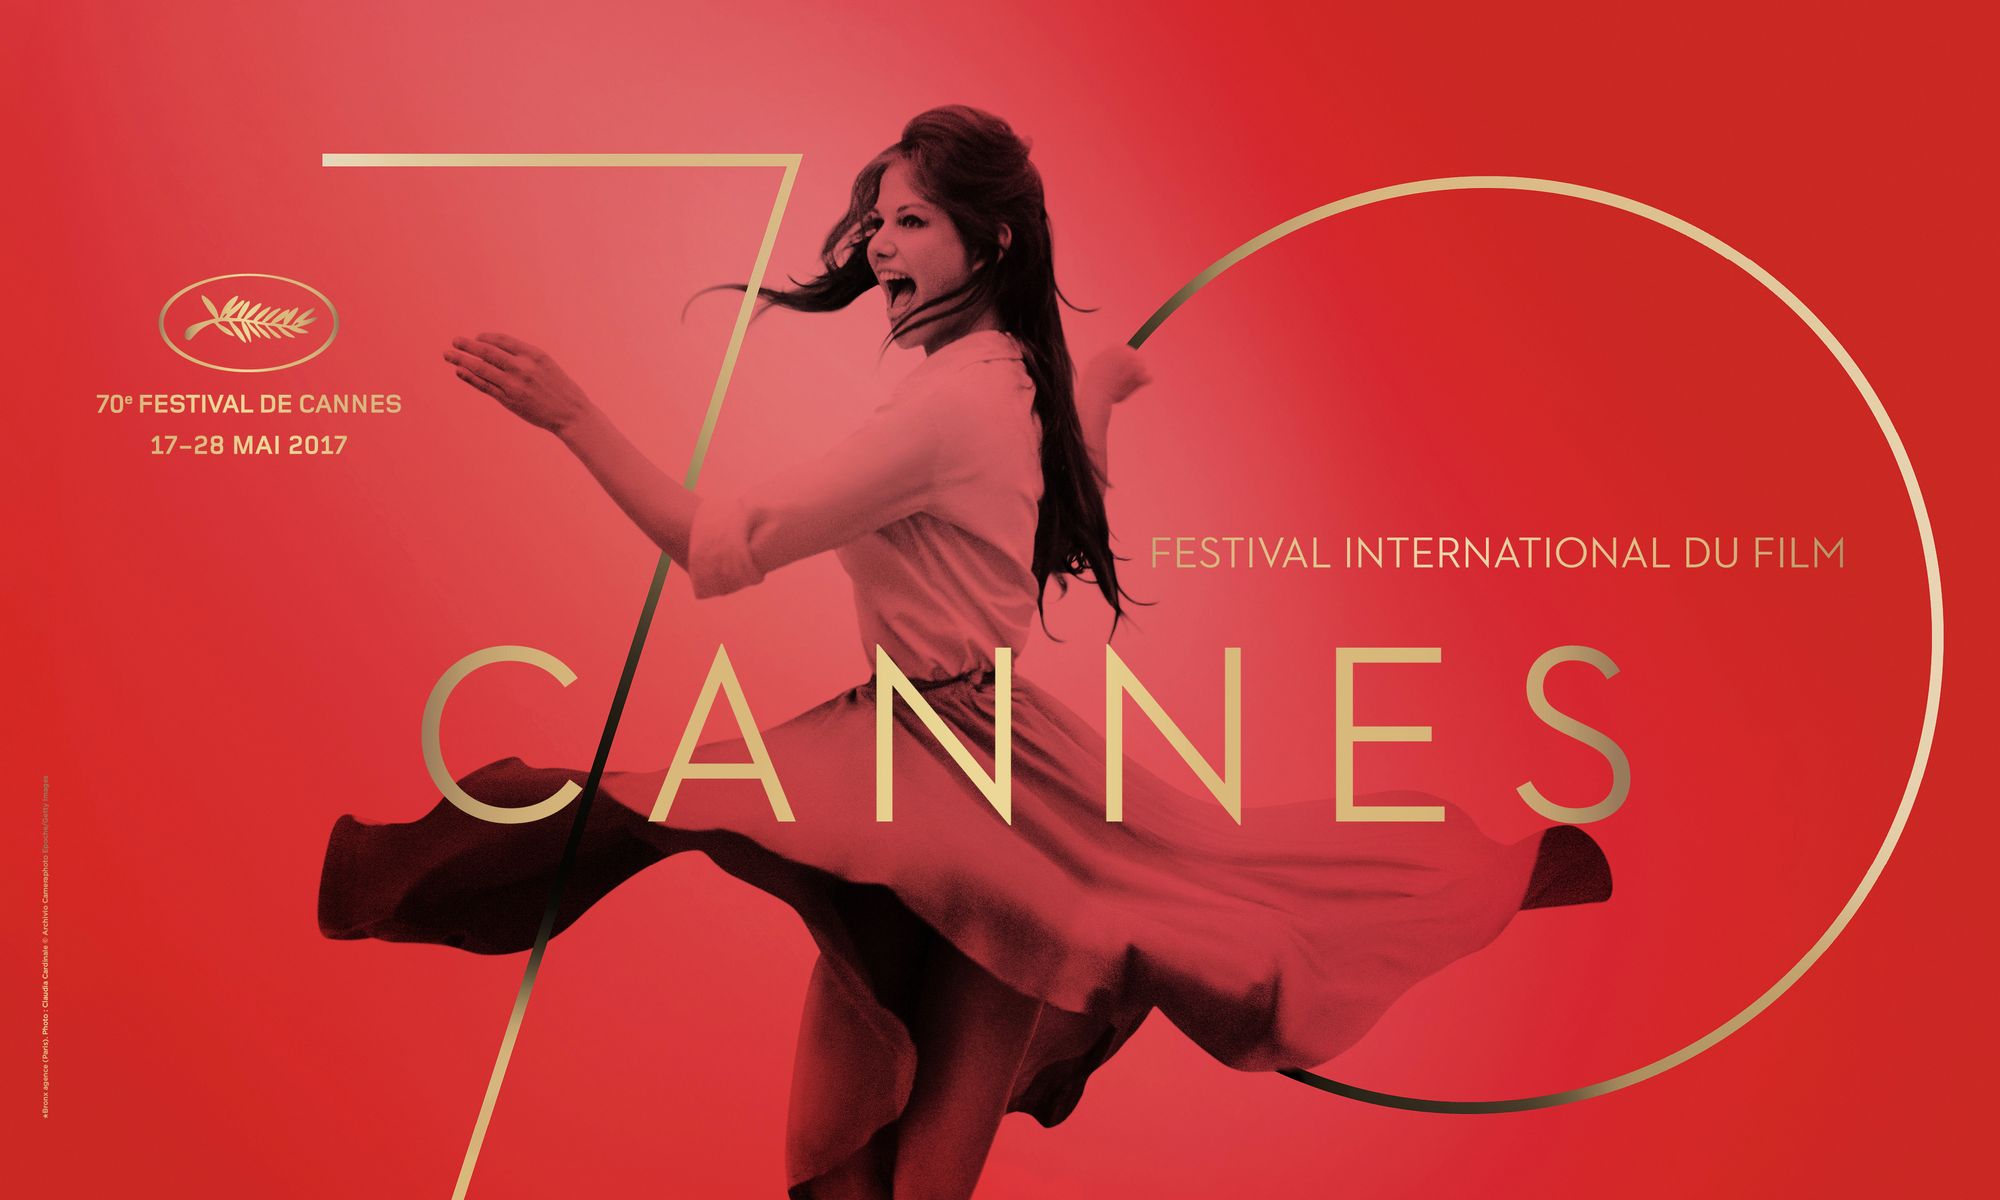 L'affiche retouchée du prochain Festival de Cannes fâche le web rts